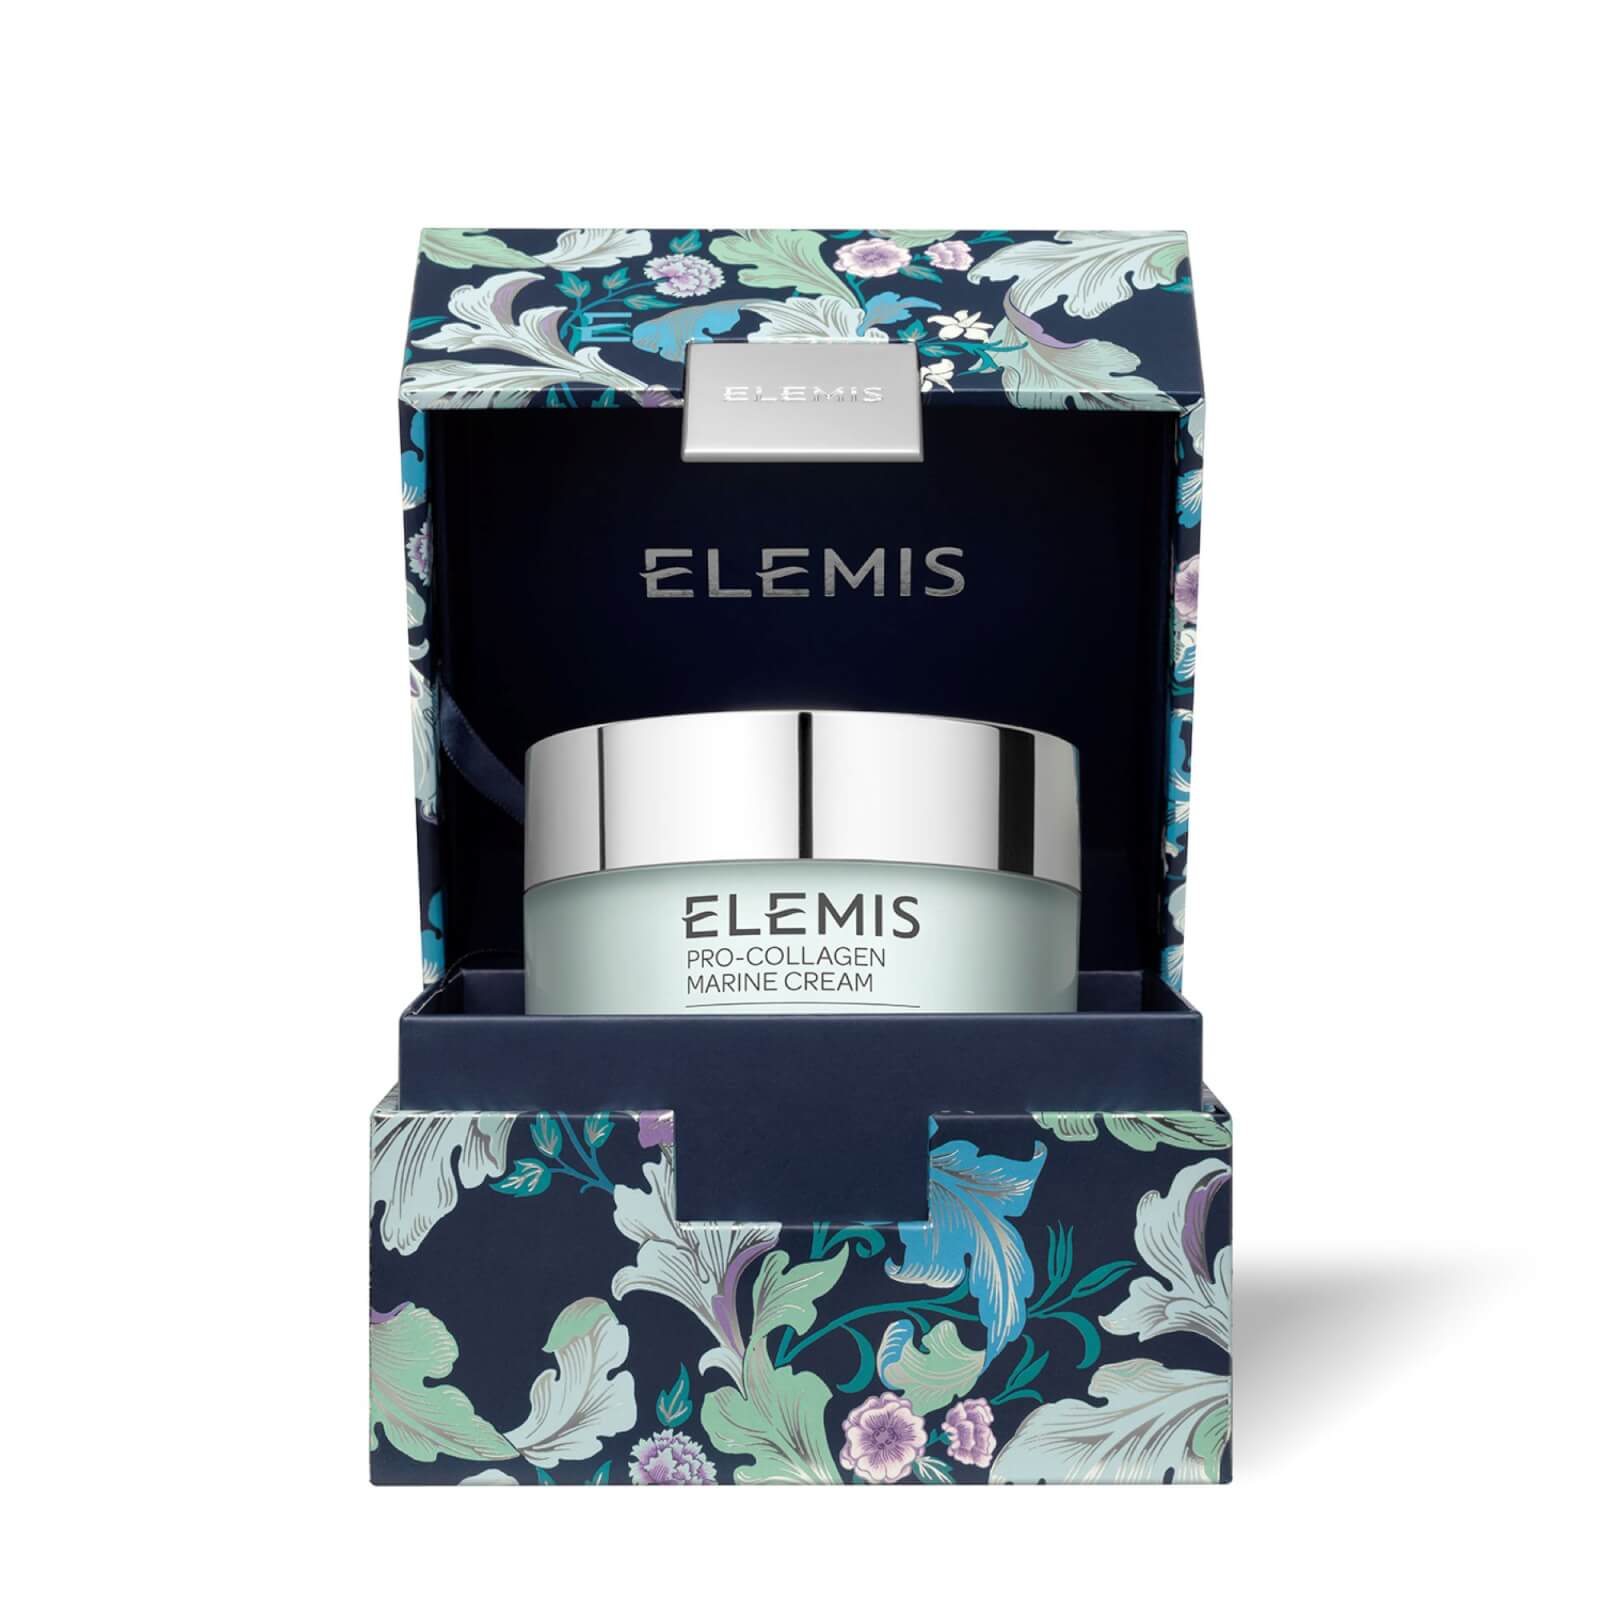 Elemis Limited Edition Supersize Pro-collagen Marine Cream 100ml In White